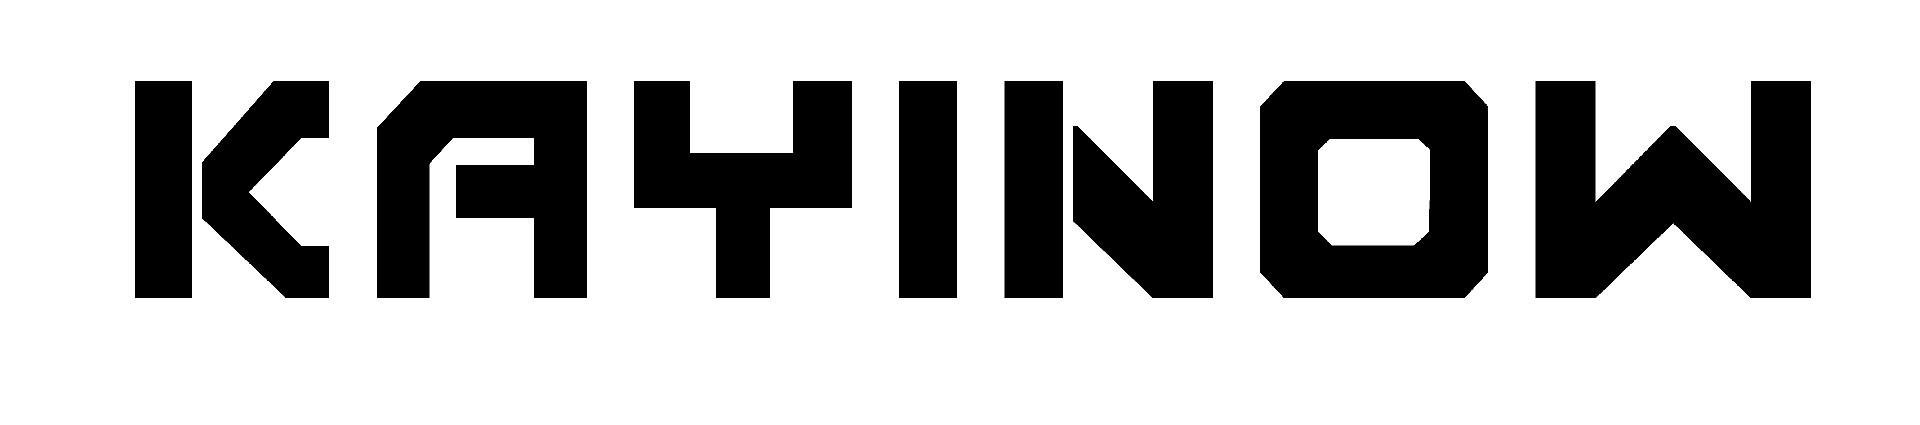 KAYINOW  logo png.png